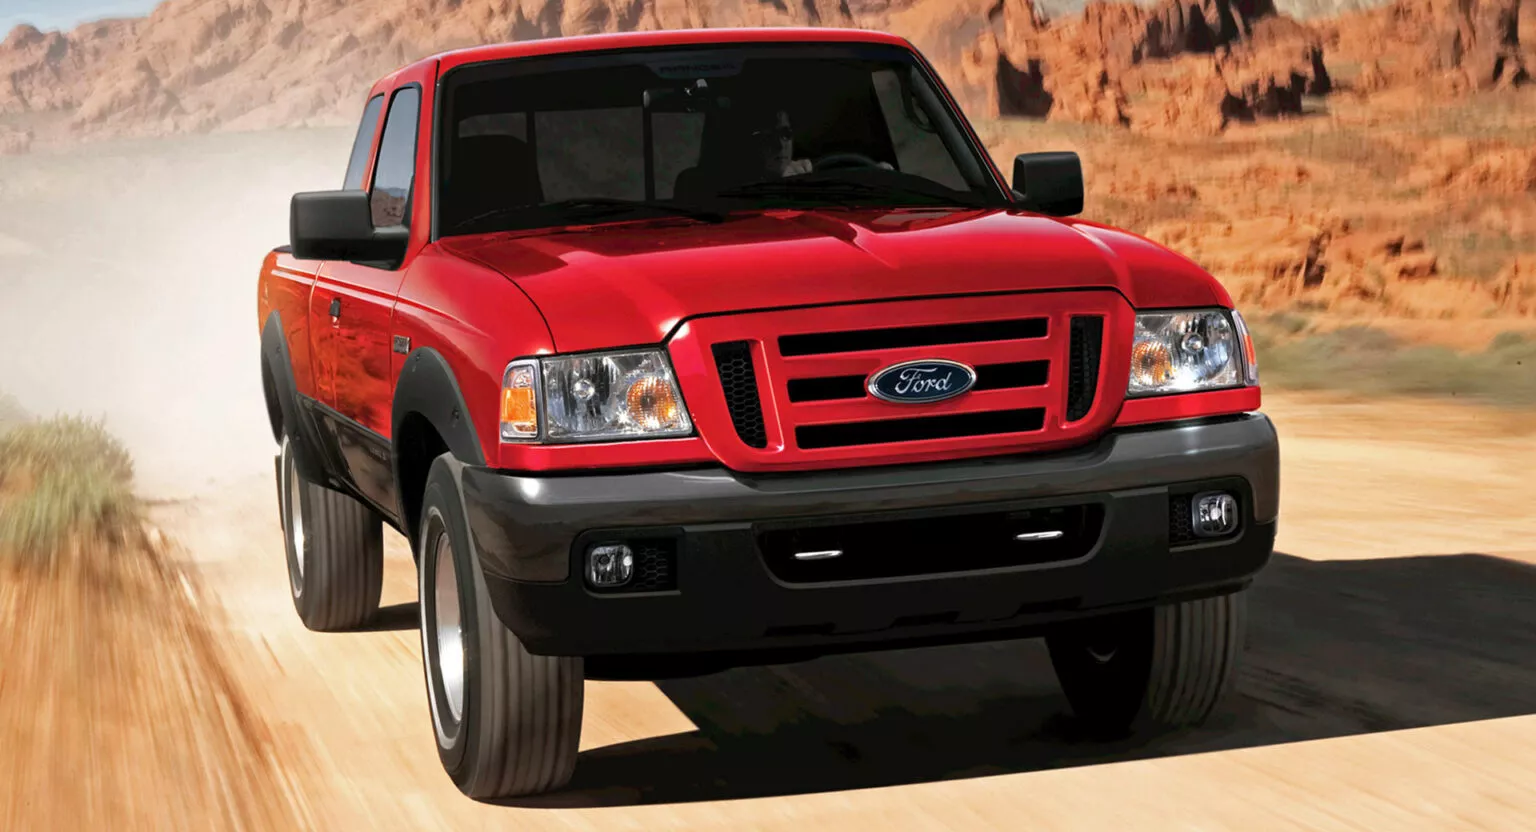 2006-Ford-Ranger-1536x832.webp